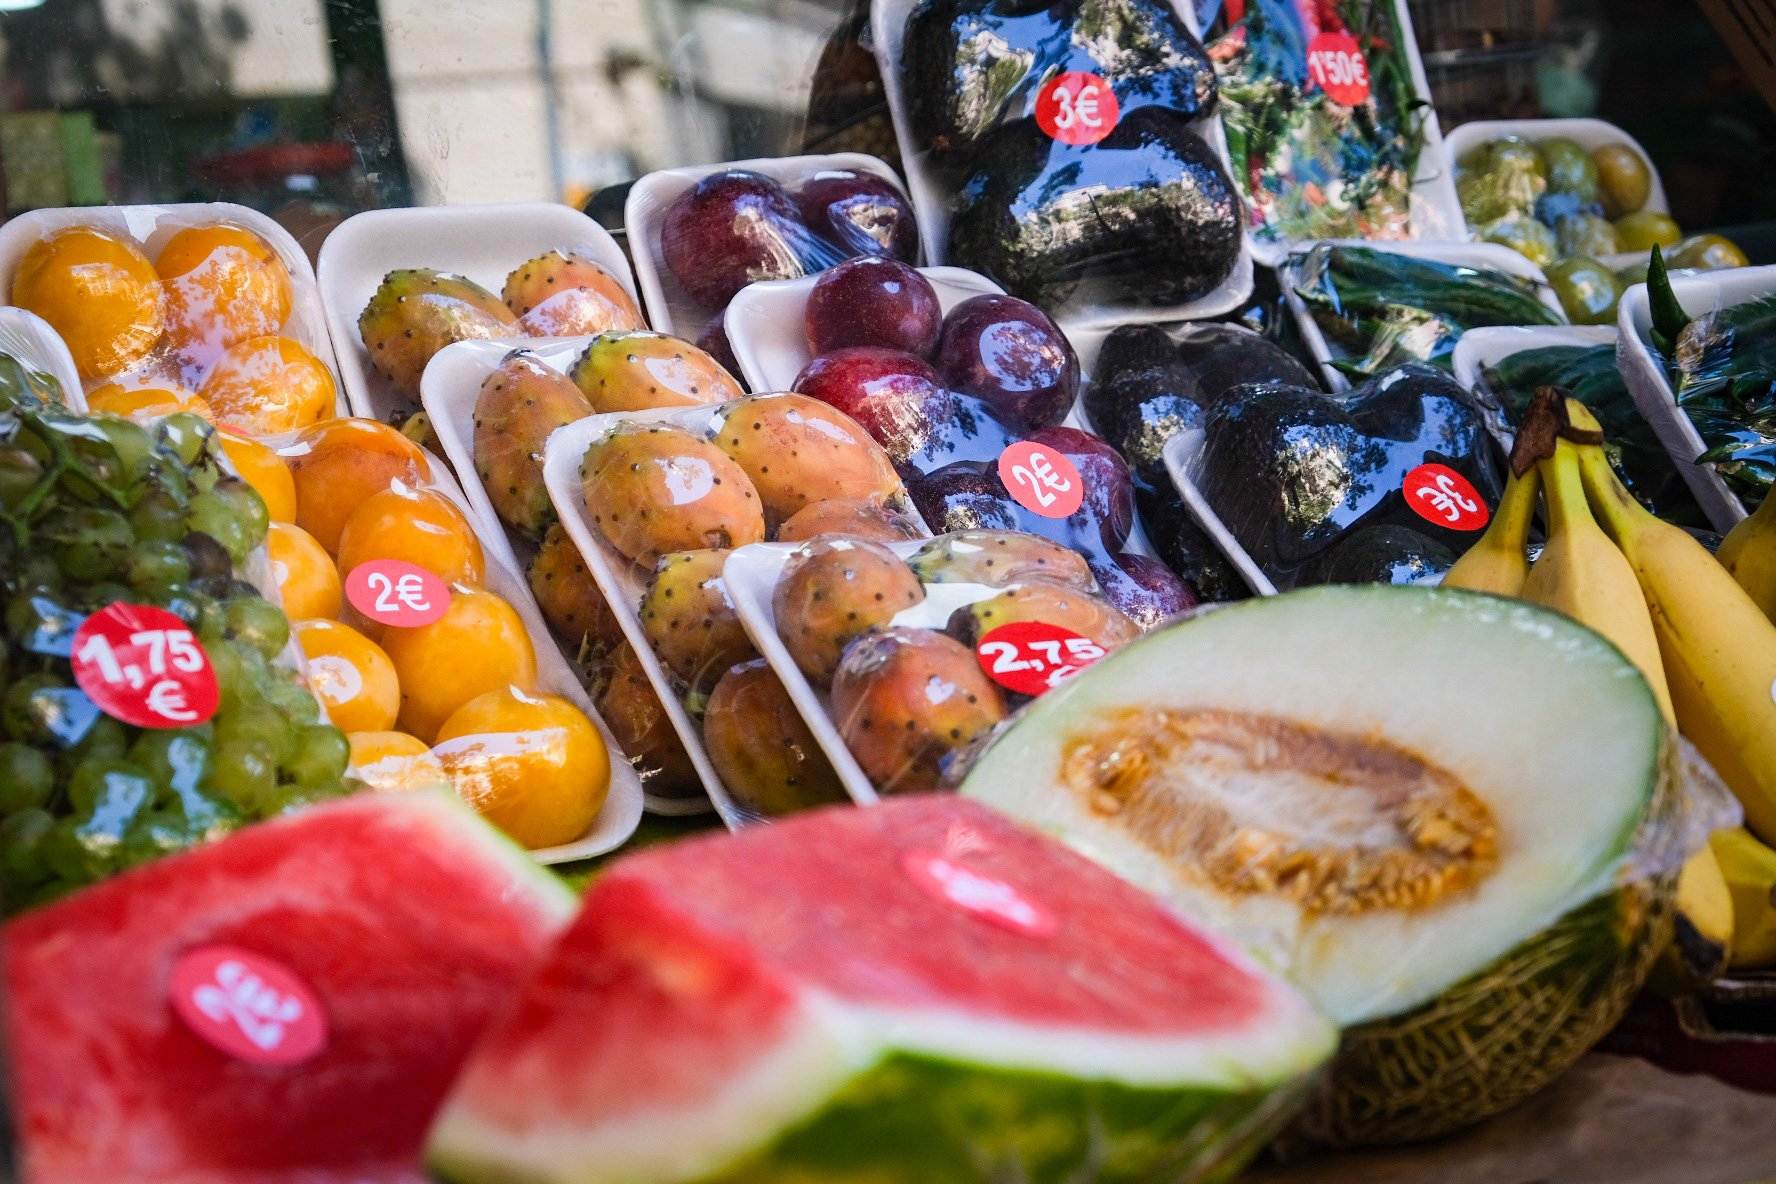 Per què els comerços continuen venent la fruita envasada en plàstic si una nova llei ho prohibeix?